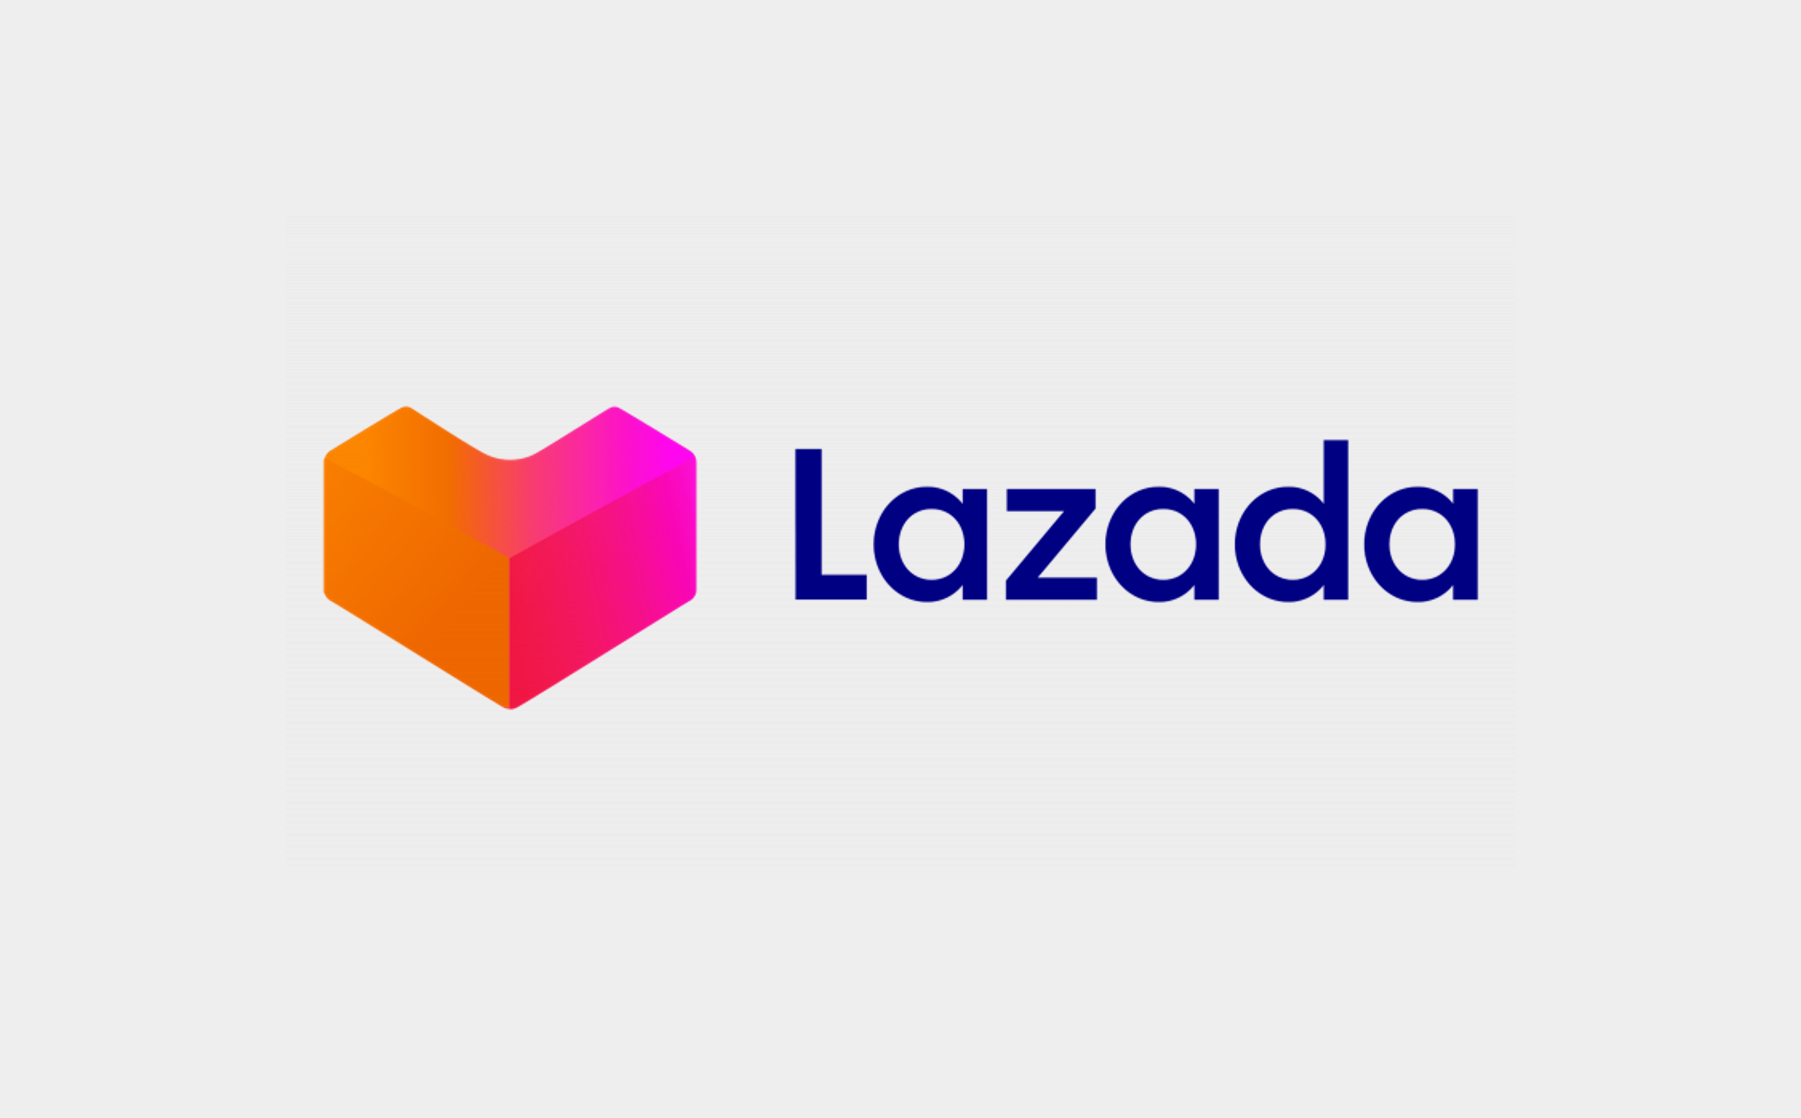 How To Create a Website Like Lazada?